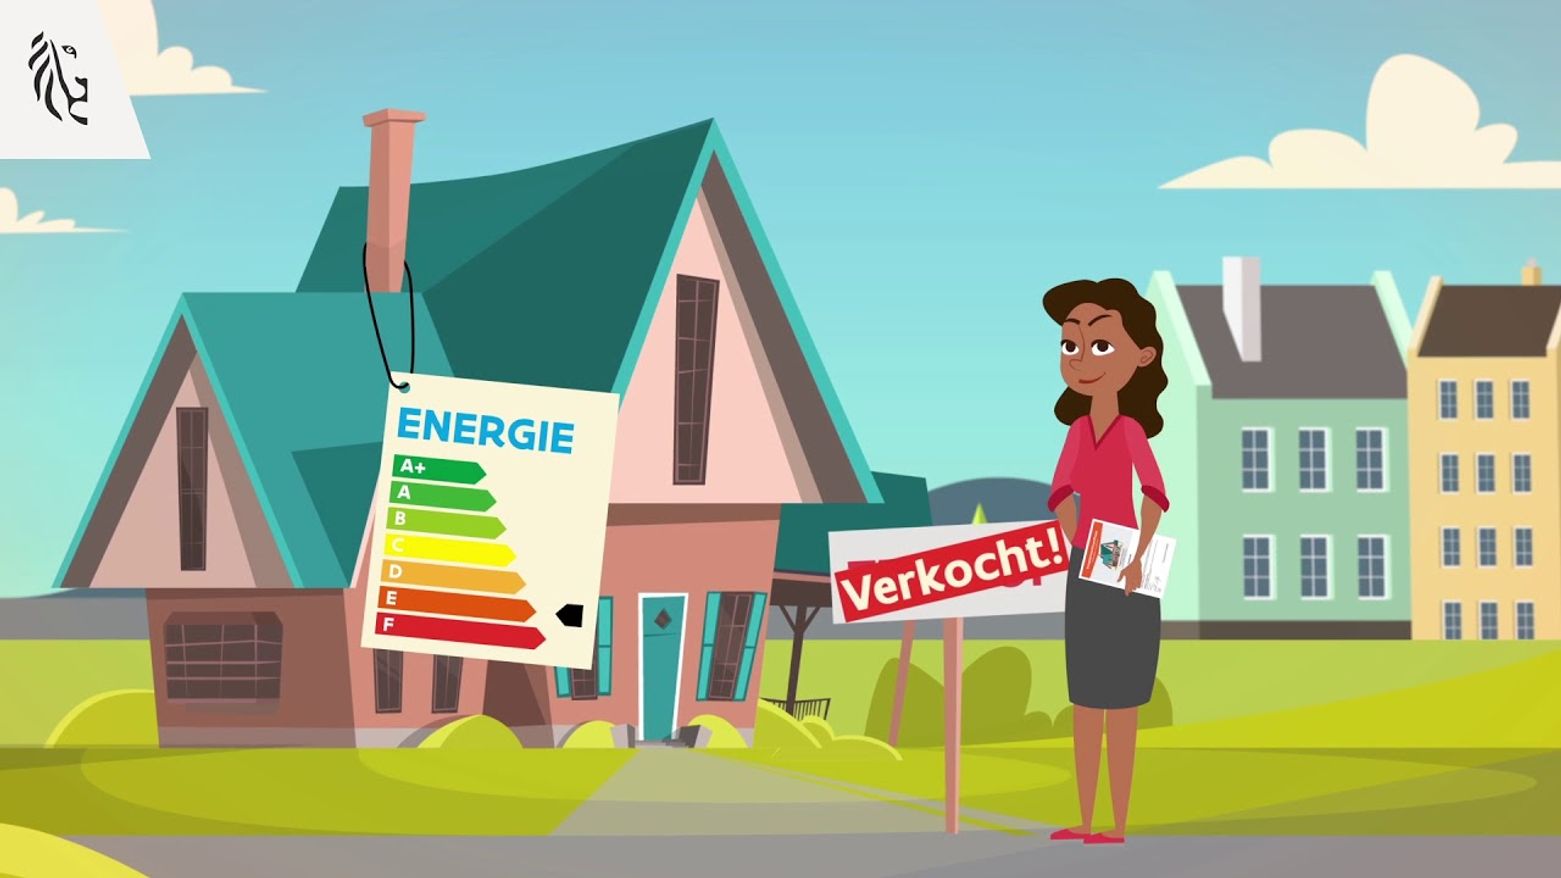 Vernieuwd EPC vertelt meteen hoe je je huis energiezuinig kan maken